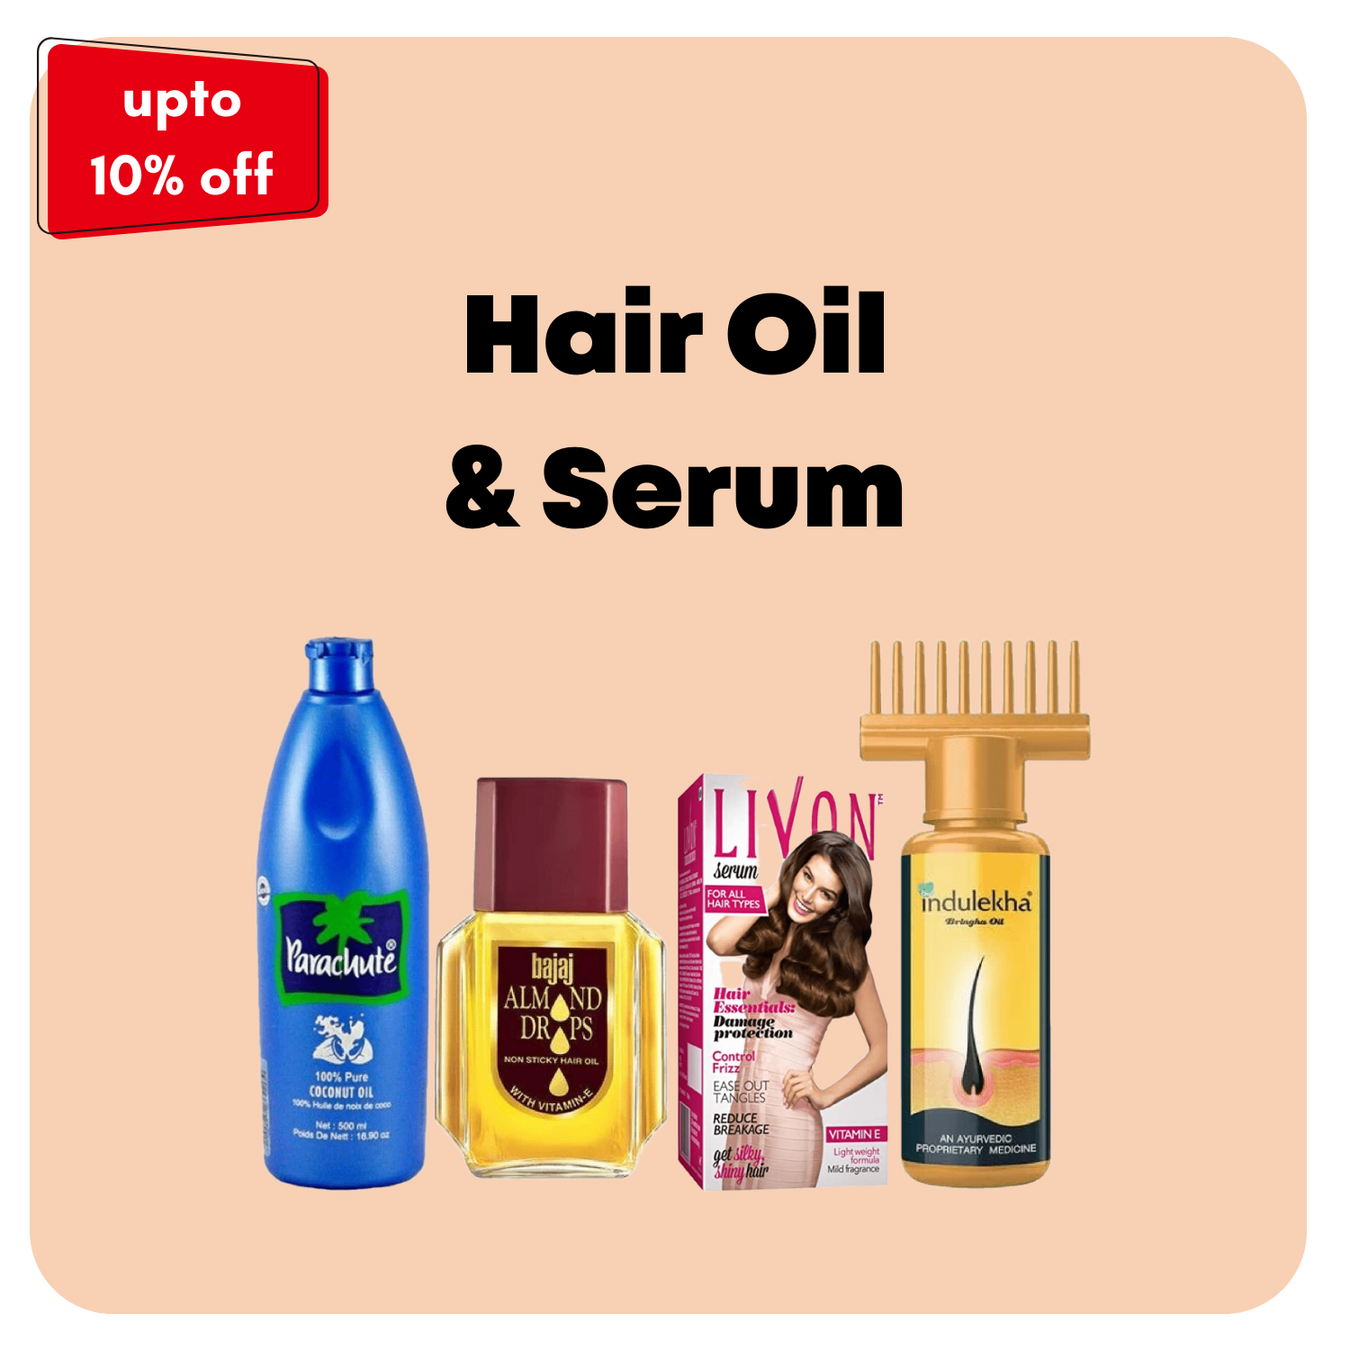 Hair Oil & Serum